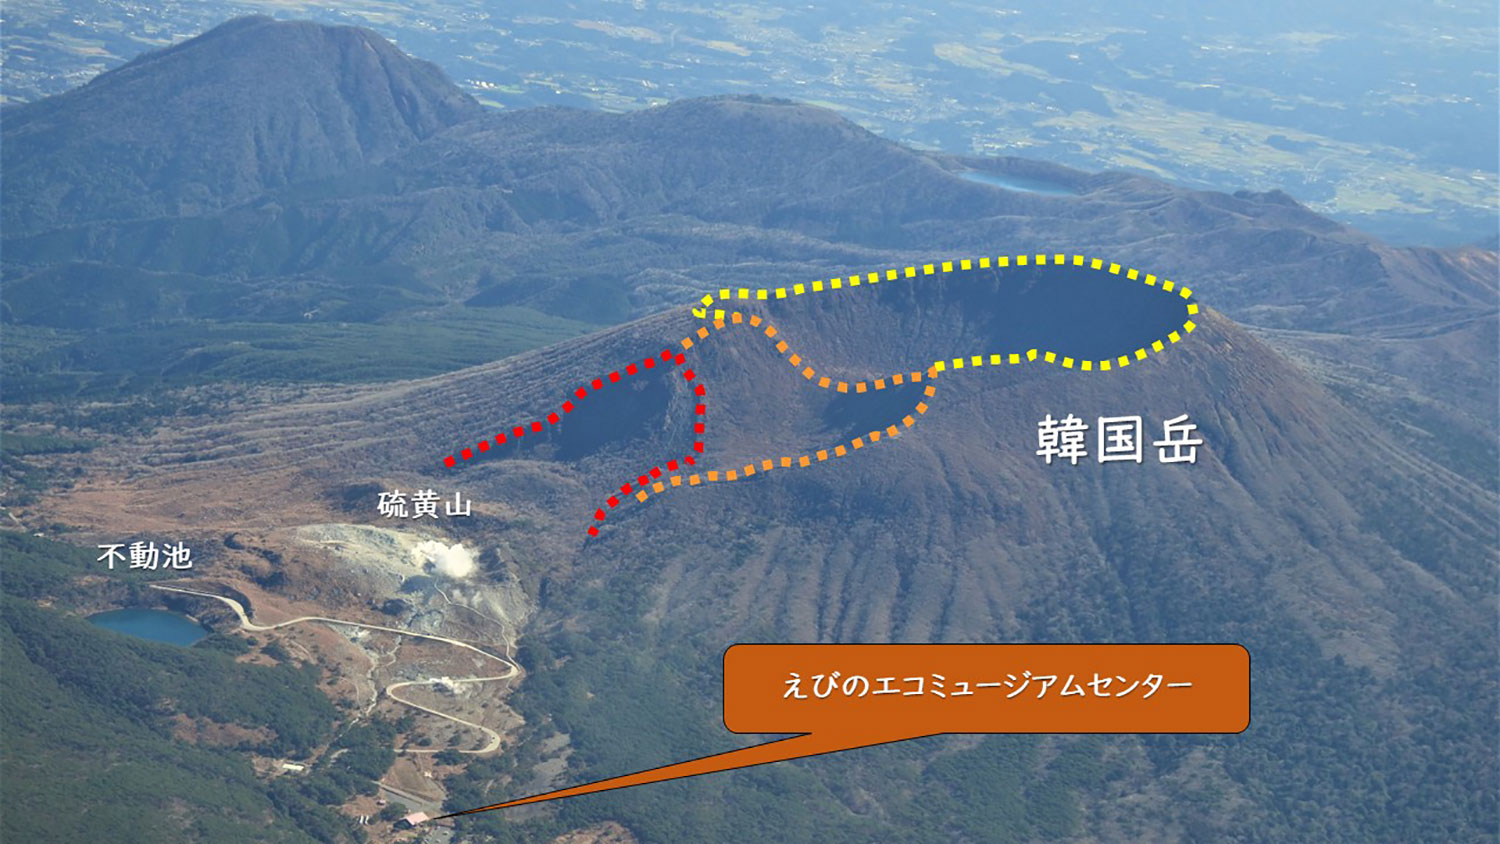 韓国岳の火口群（破線は色毎に異なる火口縁を示している）　※写真は2018年頃撮影したもの 画像：霧島ジオパーク推進連絡協議会提供